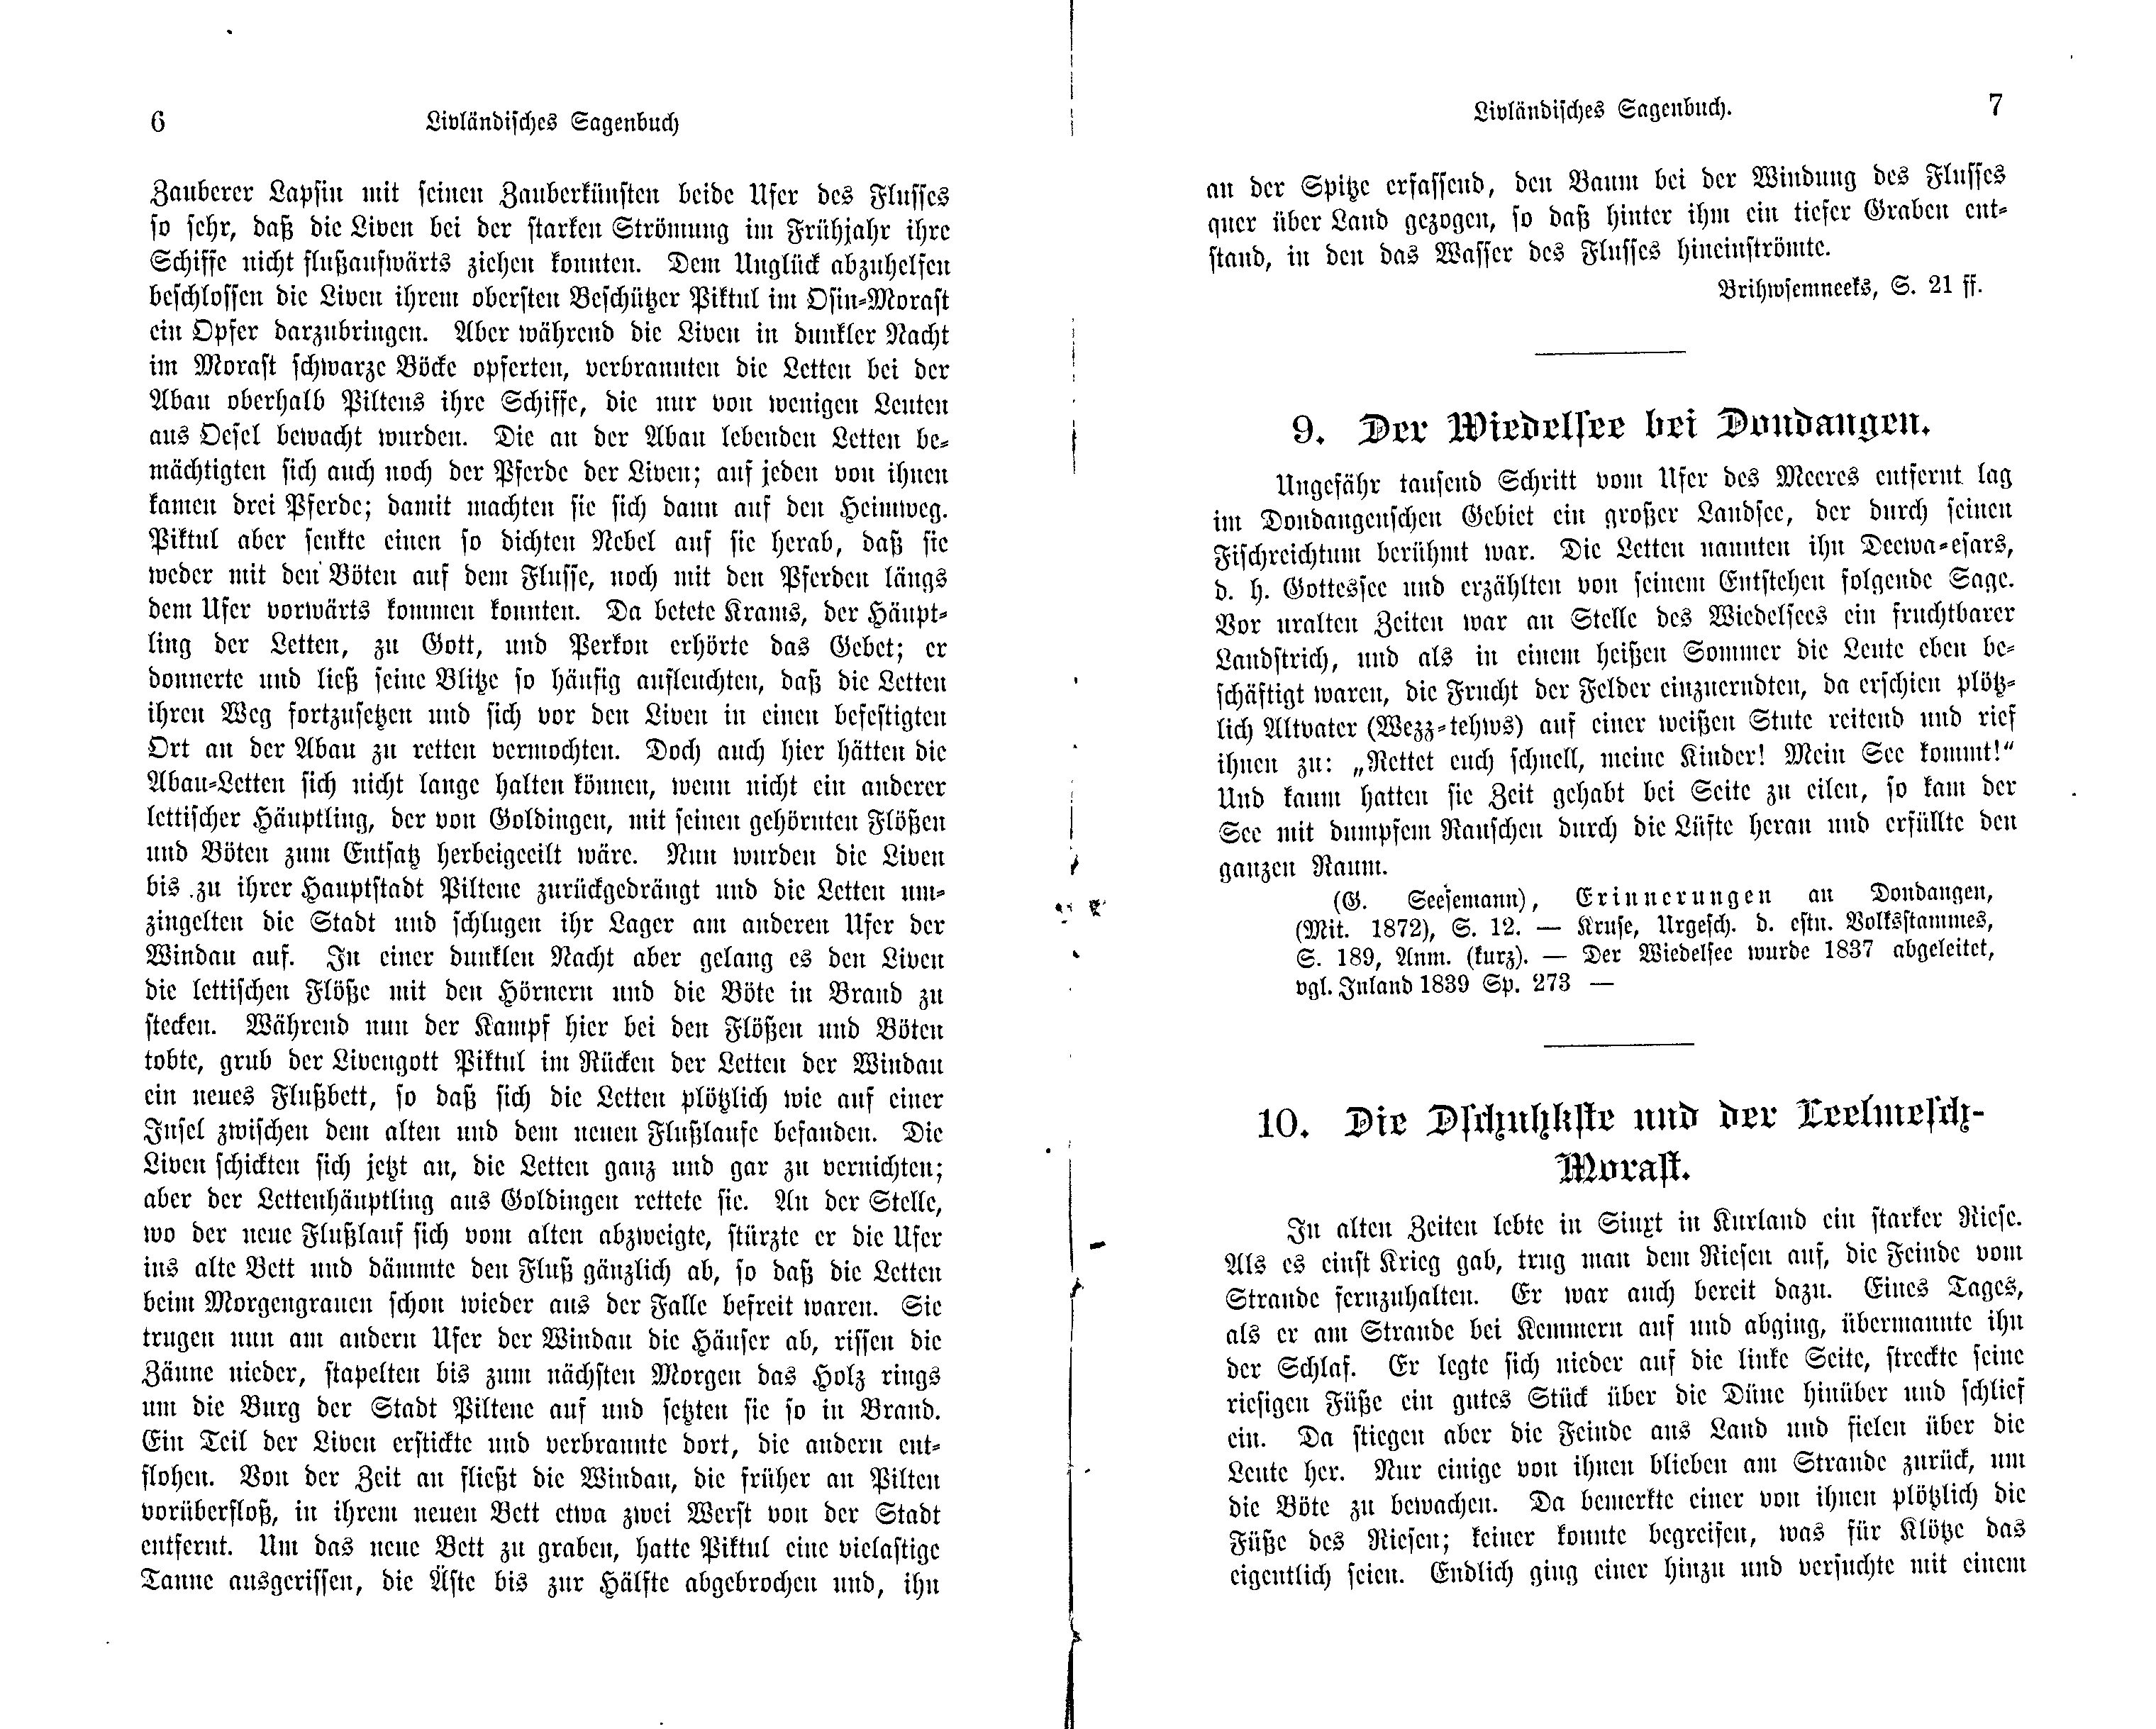 Wie die Windau bei Pilten ein neues Bett erhielt (1897) | 2. (6-7) Main body of text